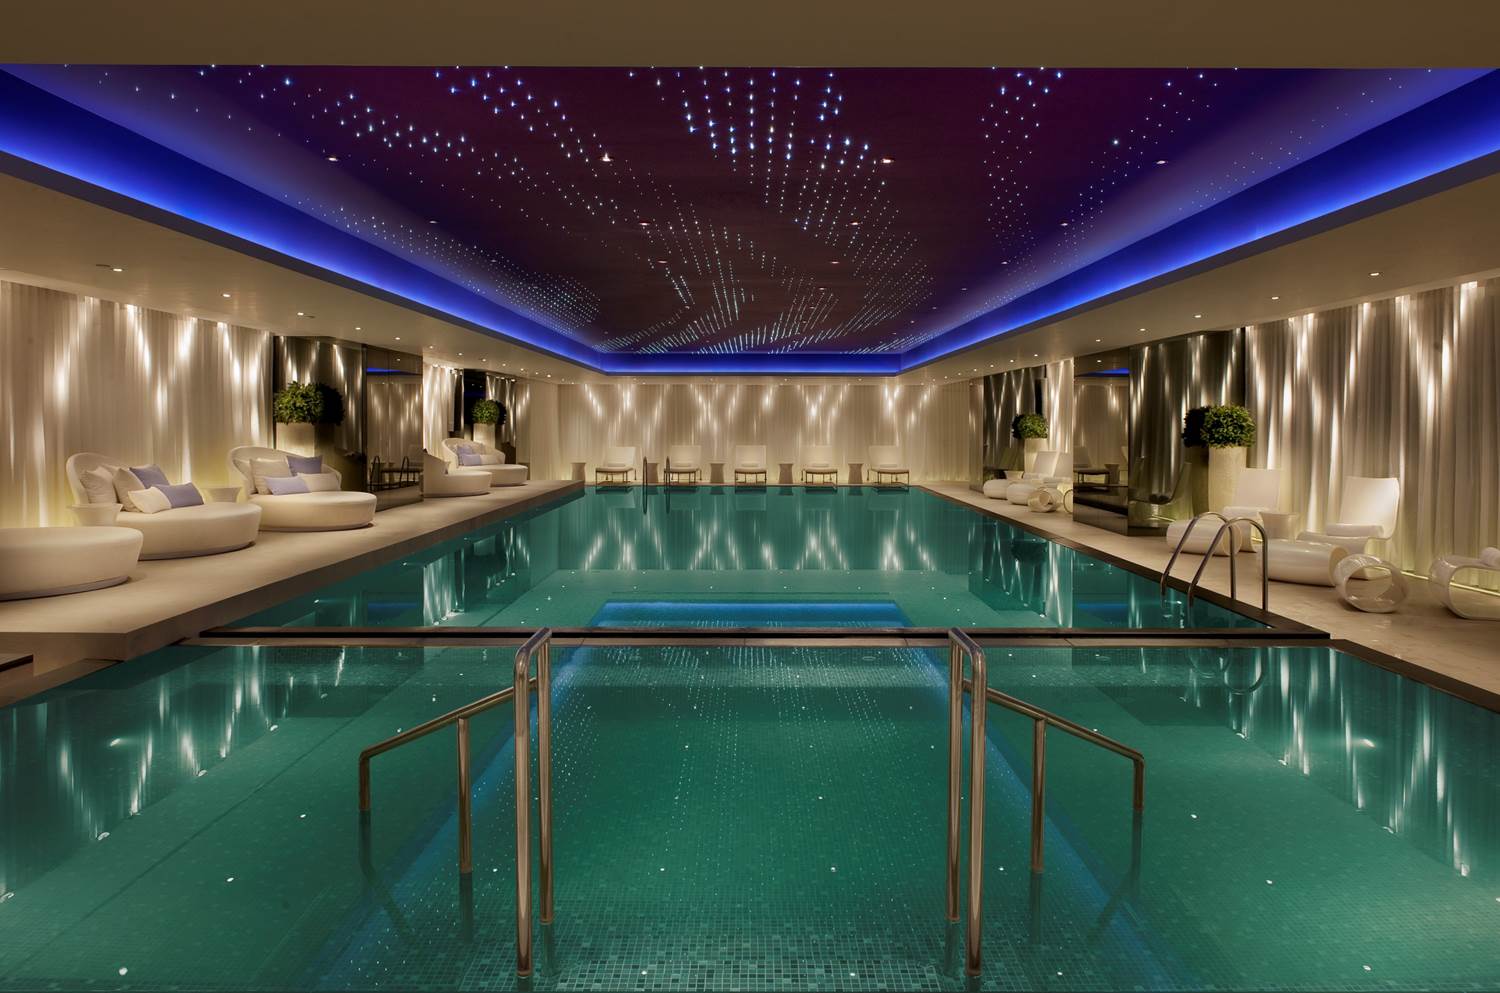 酒店泳池:香港美丽酒店时髦的室内无边泳池